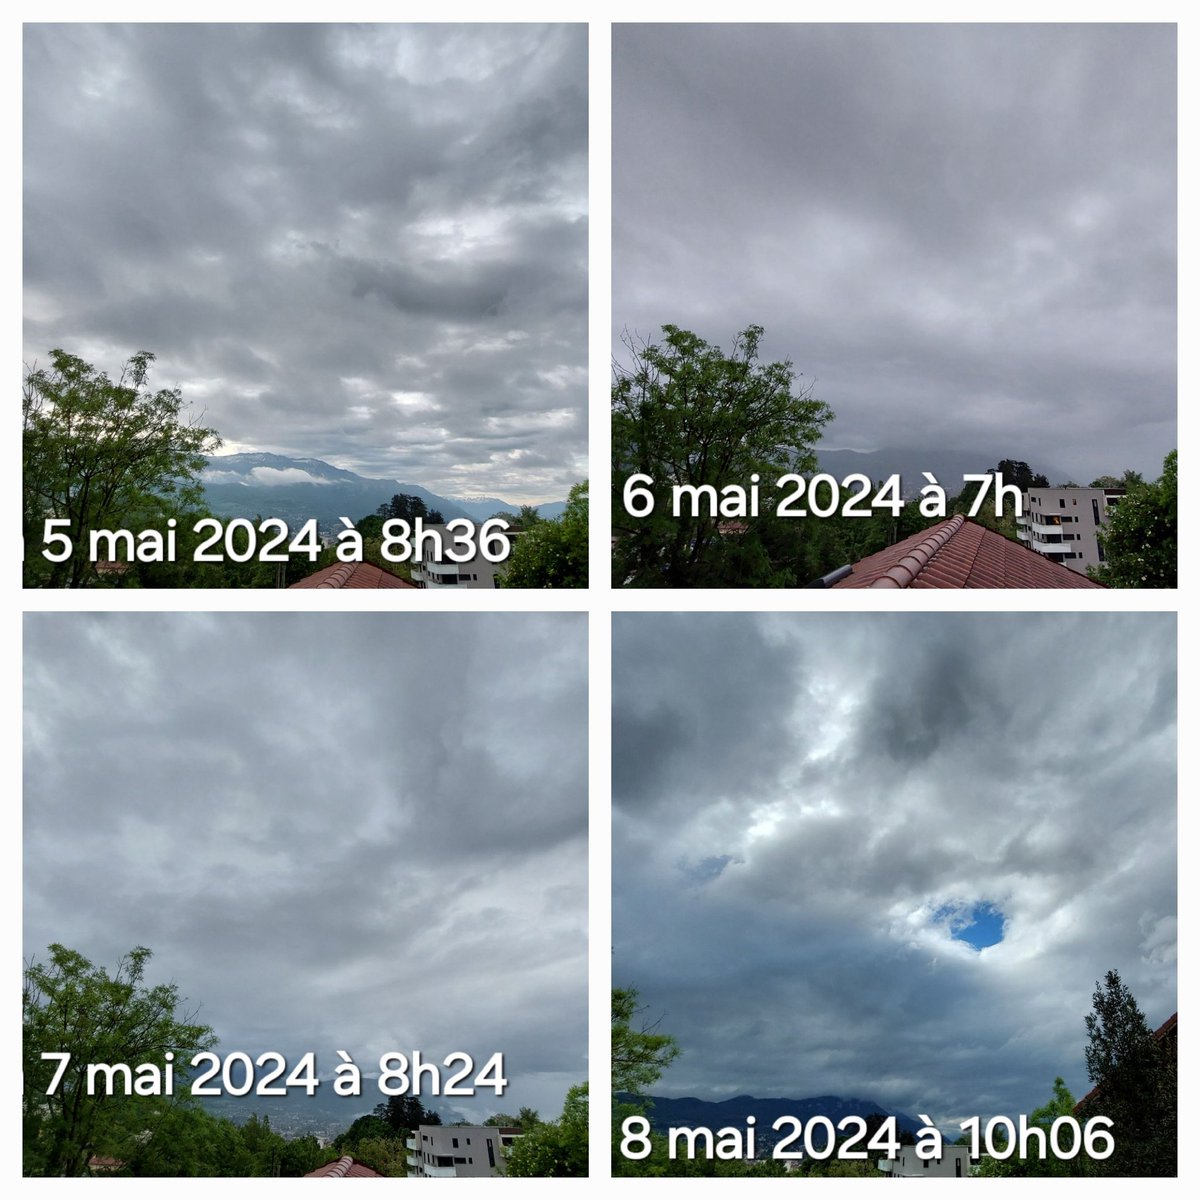 Voilà à quoi ressemble le ciel de #Voiron quand les avions de la #geoingenierie ne volent pas. Les derniers jours bleus étaient le 21/4 et 13/3. Le reste était gris comme sur les photos 2 & 3, devenu une norme. @Voiron_Ville @julienpolat @laurentwauquiez @PVoironnais @ledauphine